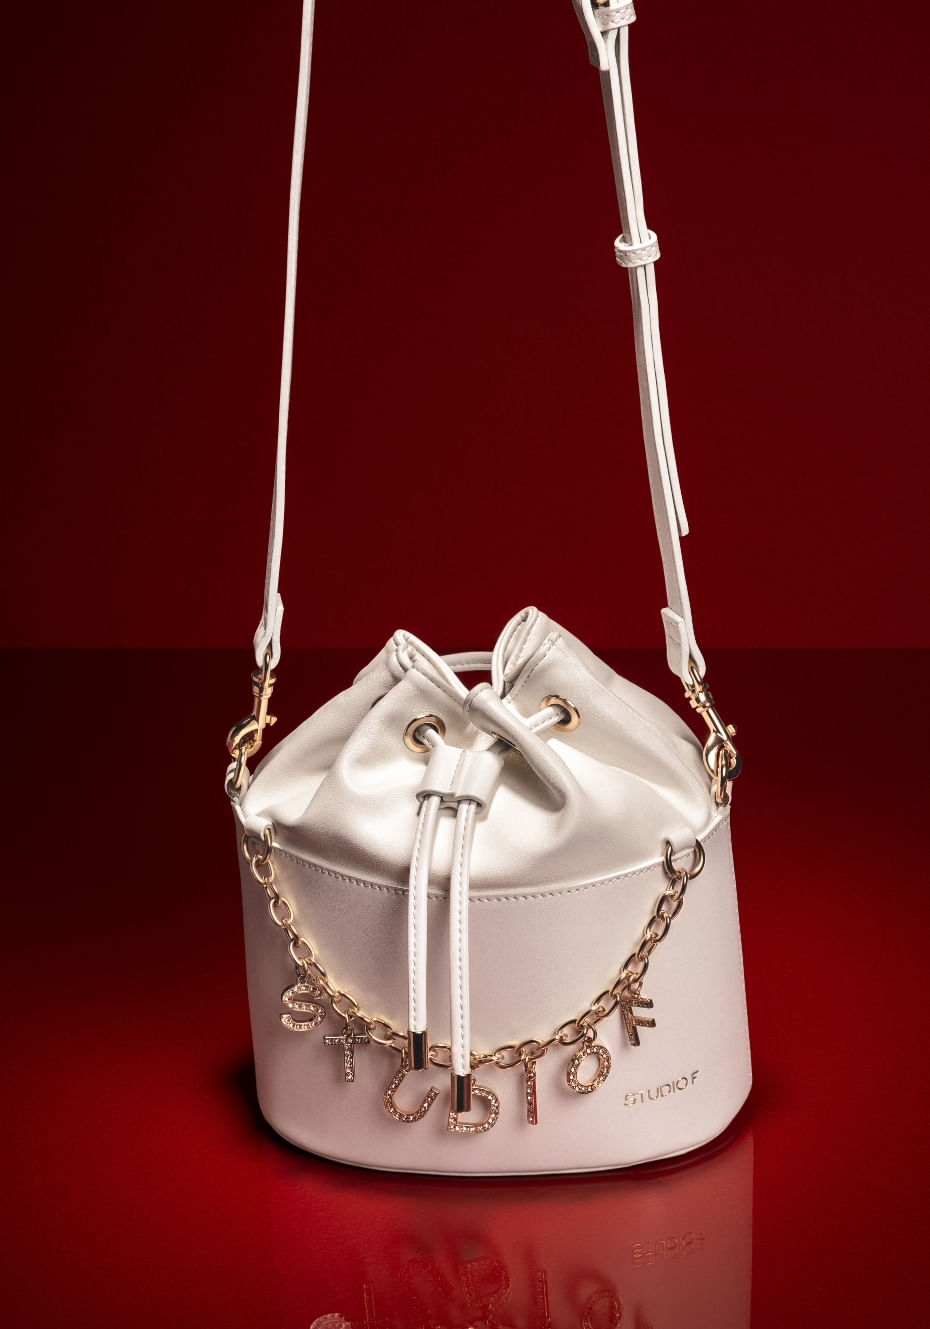 Bolso manos libres para mujer de color blanco con cadena y letras doradas. Campaña San Valentín, Studio F 